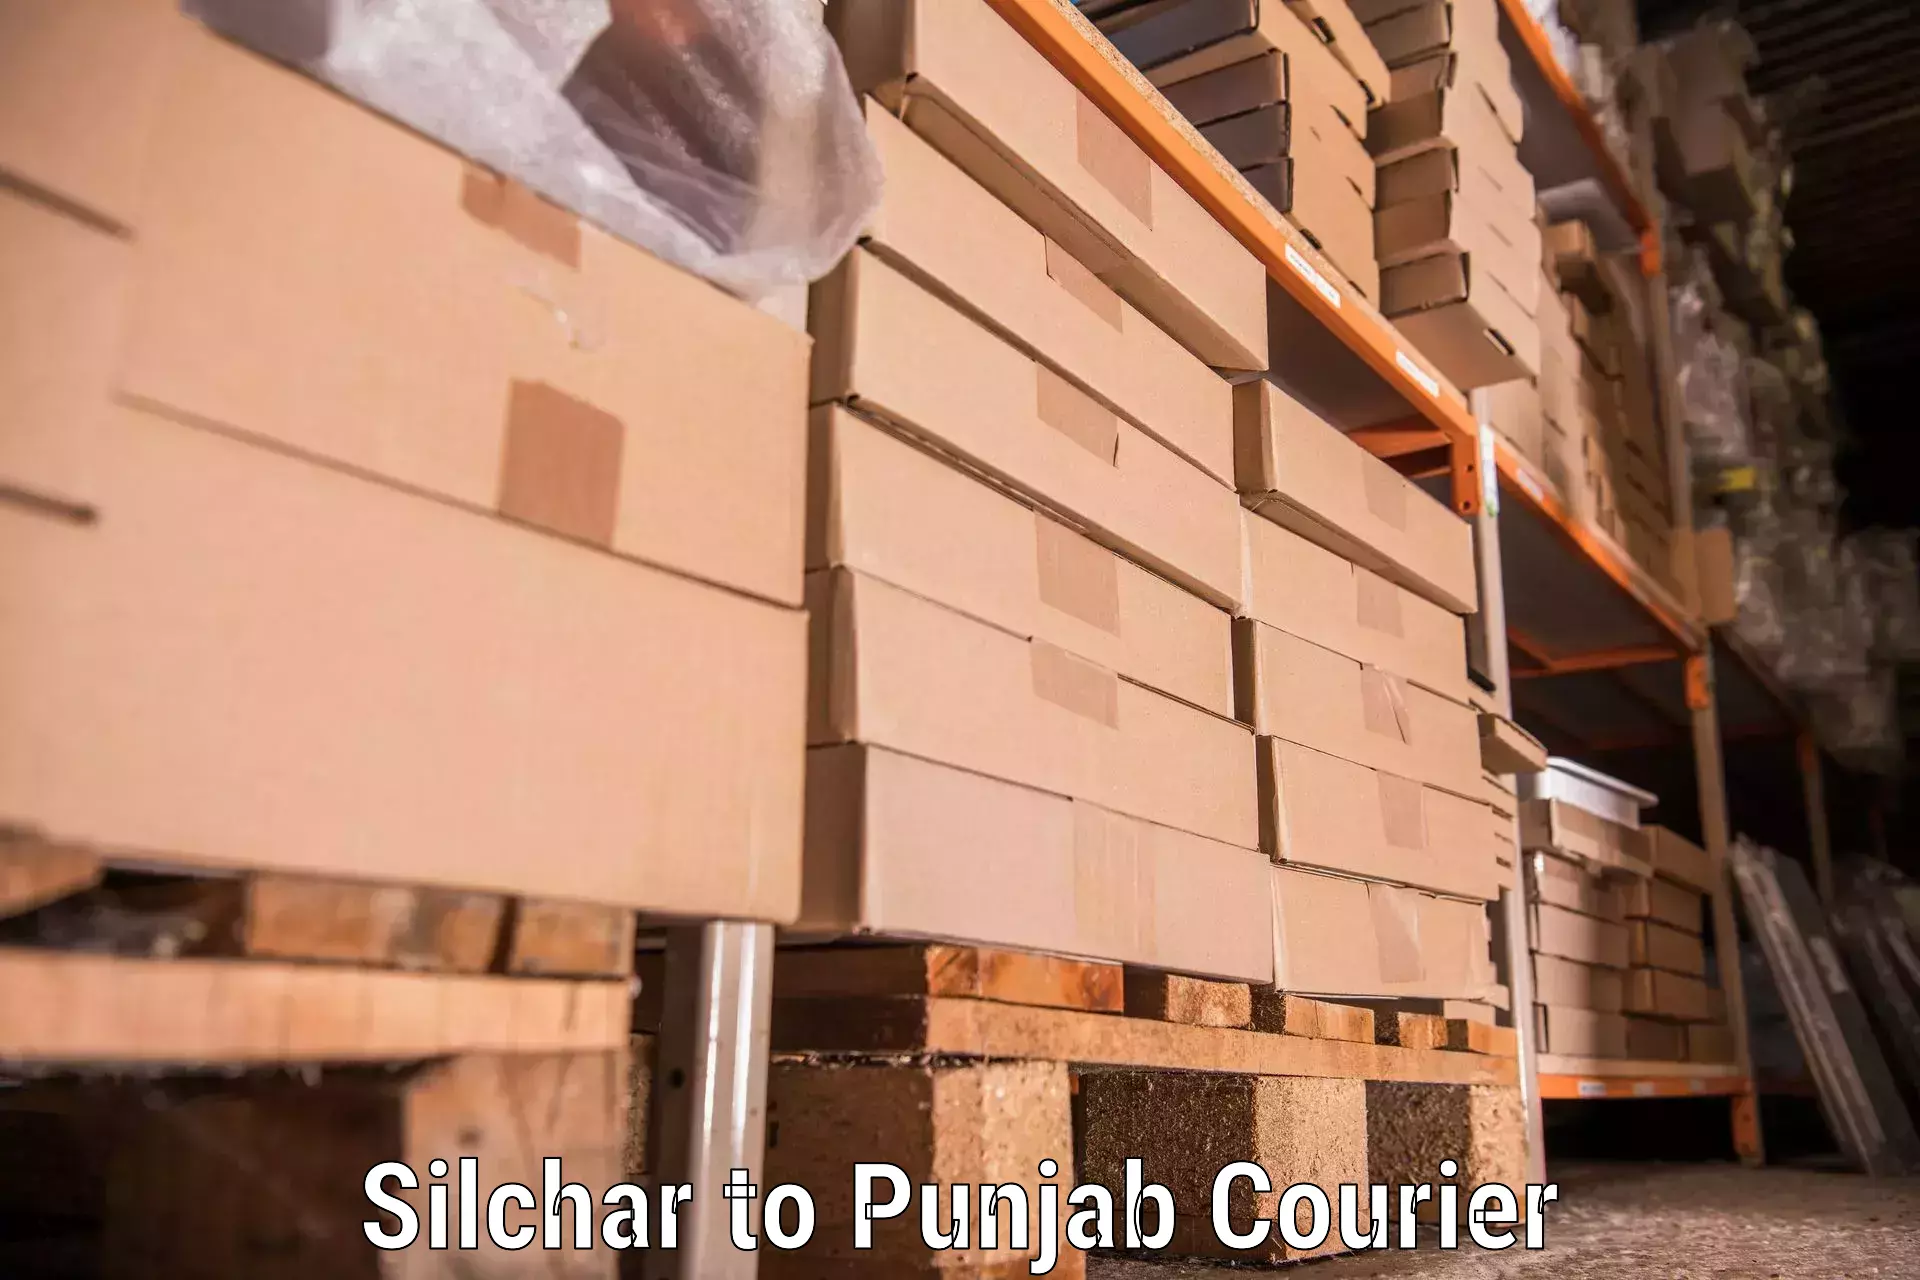 Furniture transport professionals Silchar to Patti Tarn Tara